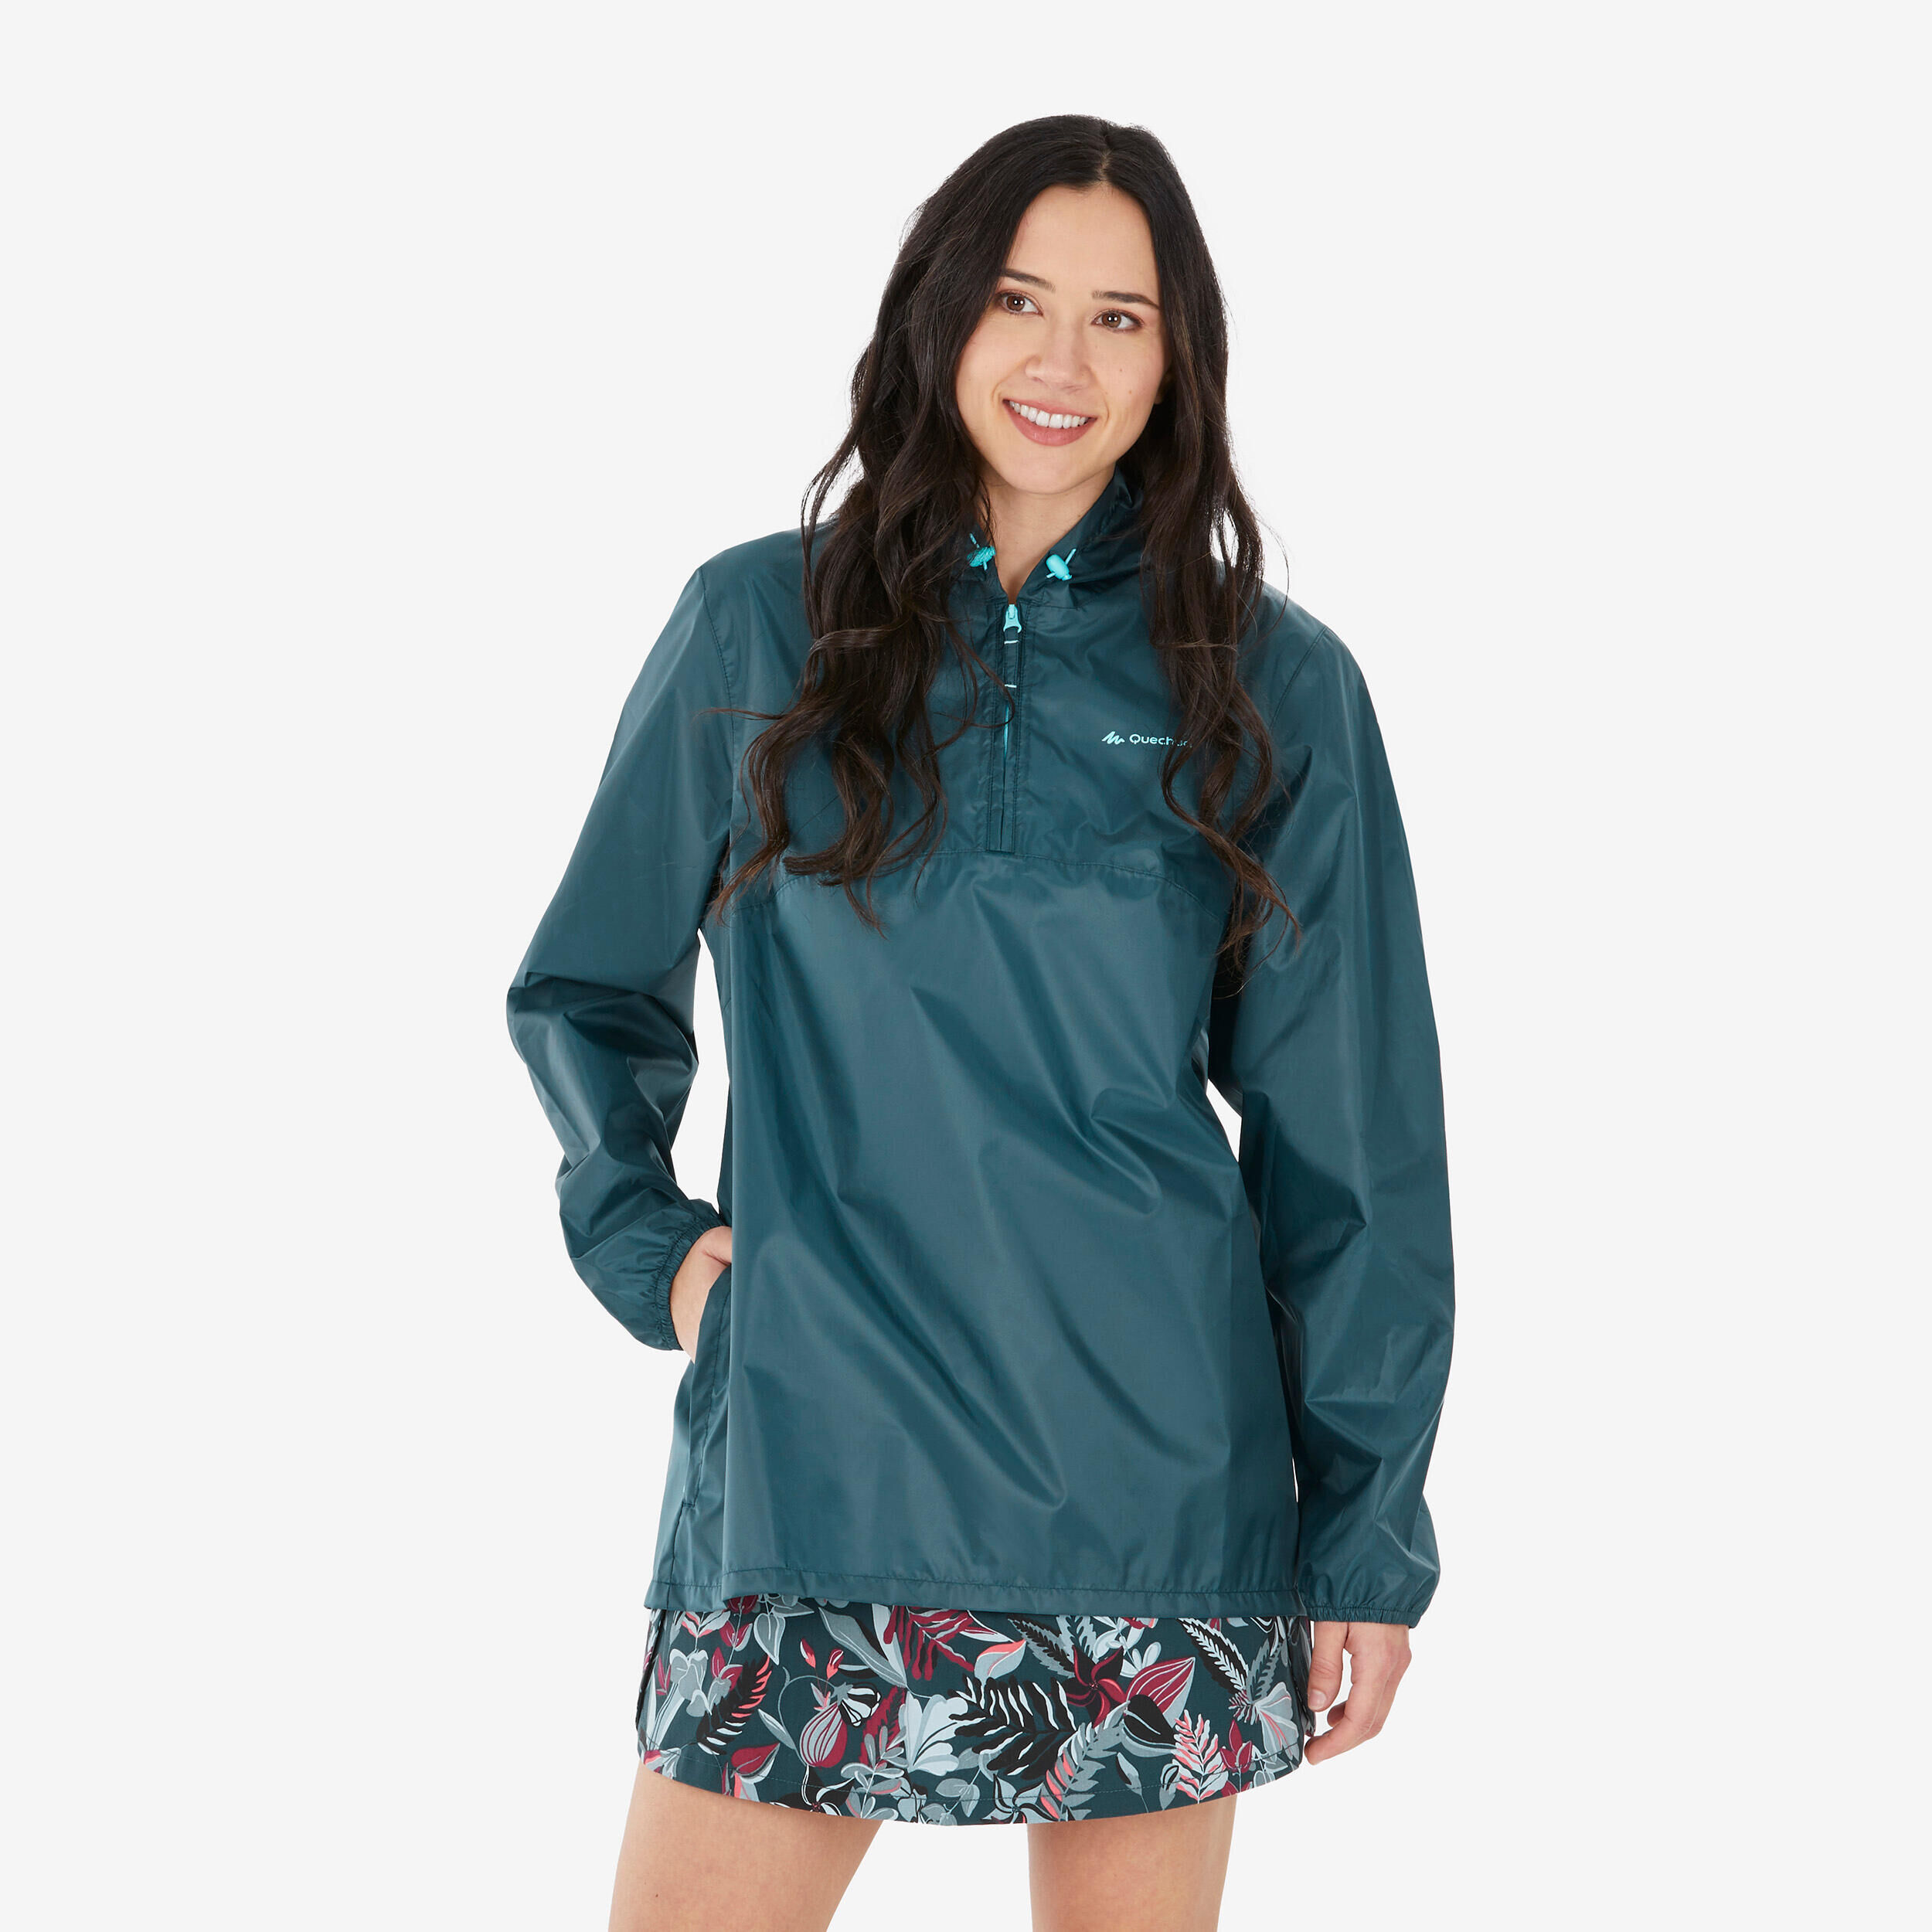 QUECHUA Women's Windproof and Water-repellent Hiking Jacket - Raincut 1/2 Zip